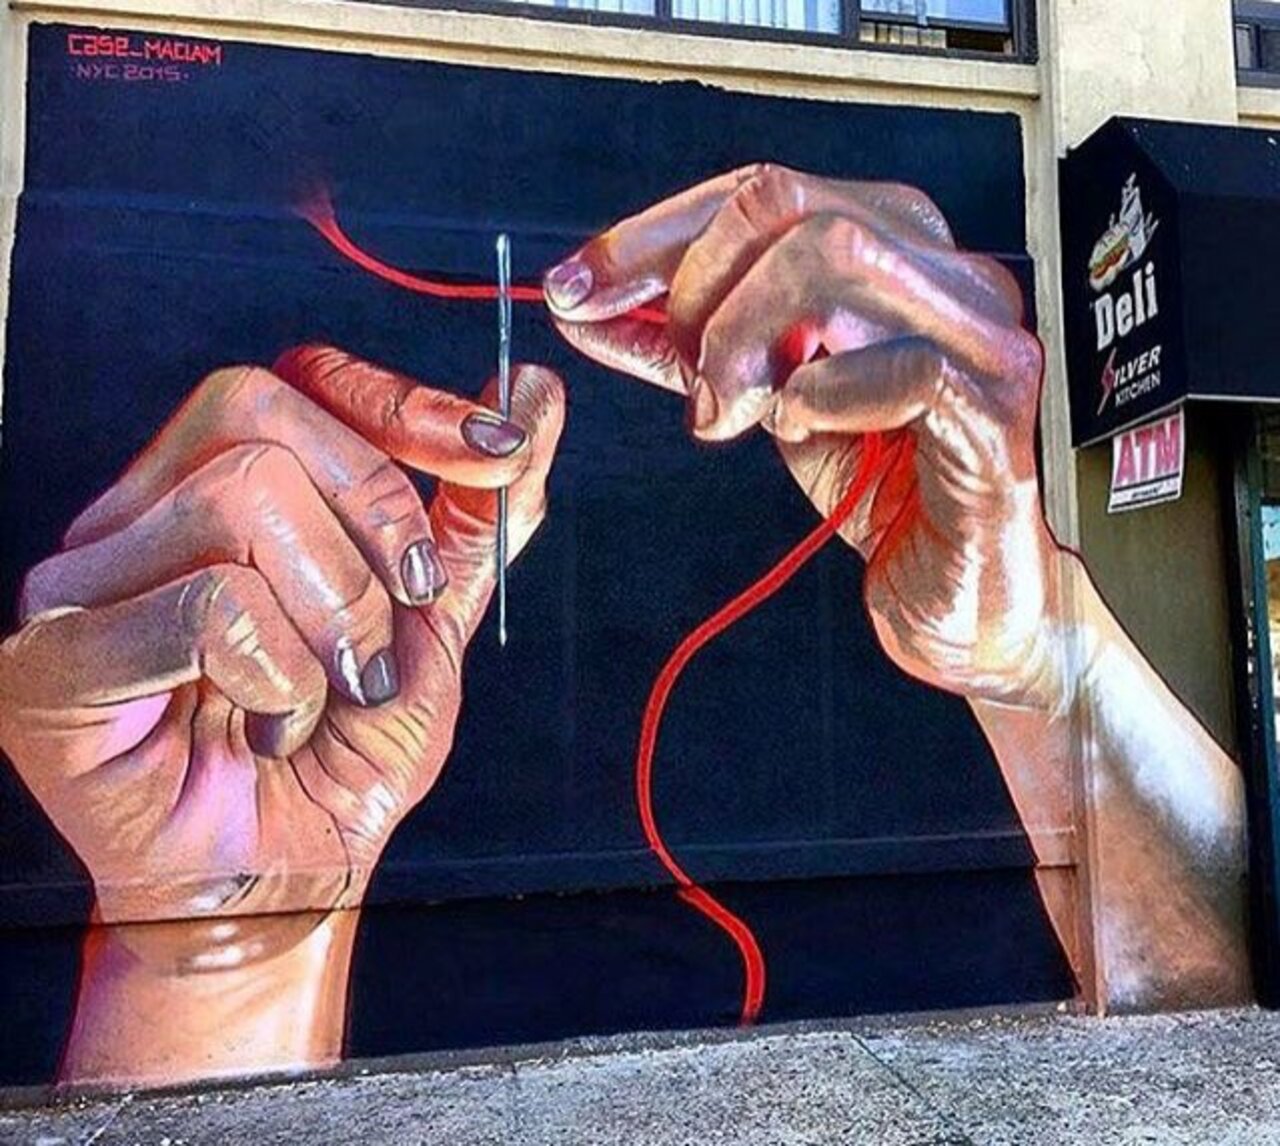 RT belilac "RT belilac "New Street Art by Case Ma'Claim in NYC 

#art #graffiti #mural #streetart https://t.co/NJdah1TvwV""